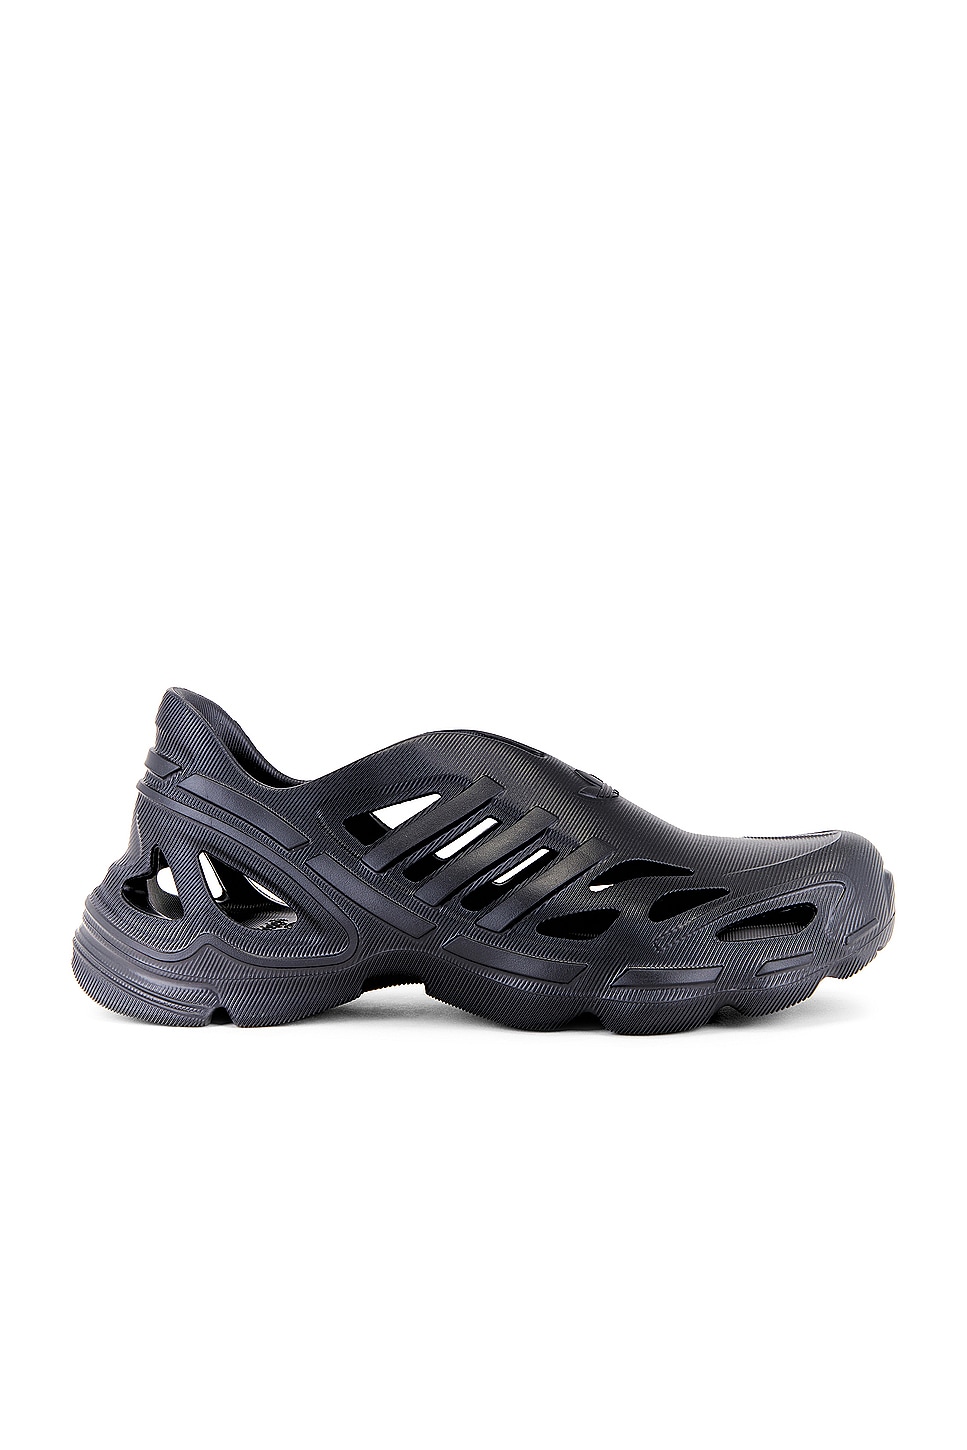 Image 1 of adidas Originals Adifom Supernova in Core Black